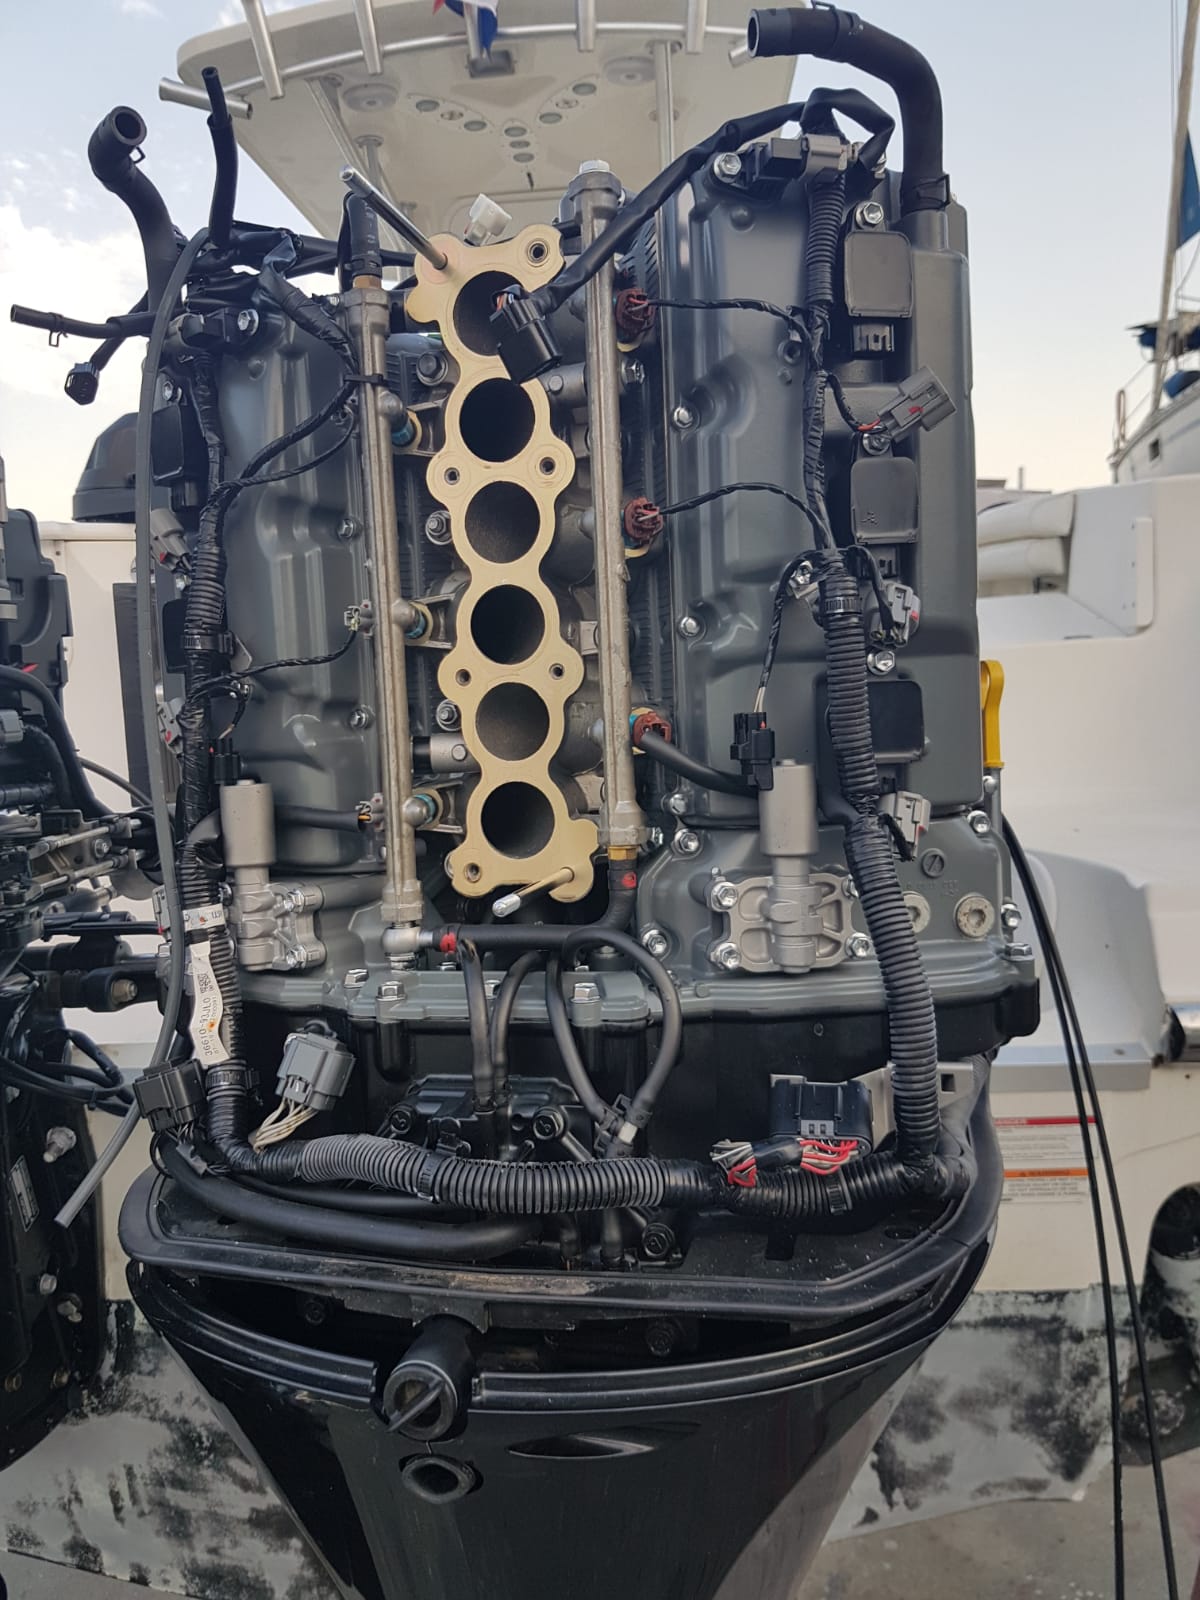 Mantenimiento de un motor fueraborda: aspectos básicos - Ibiza Boat Service